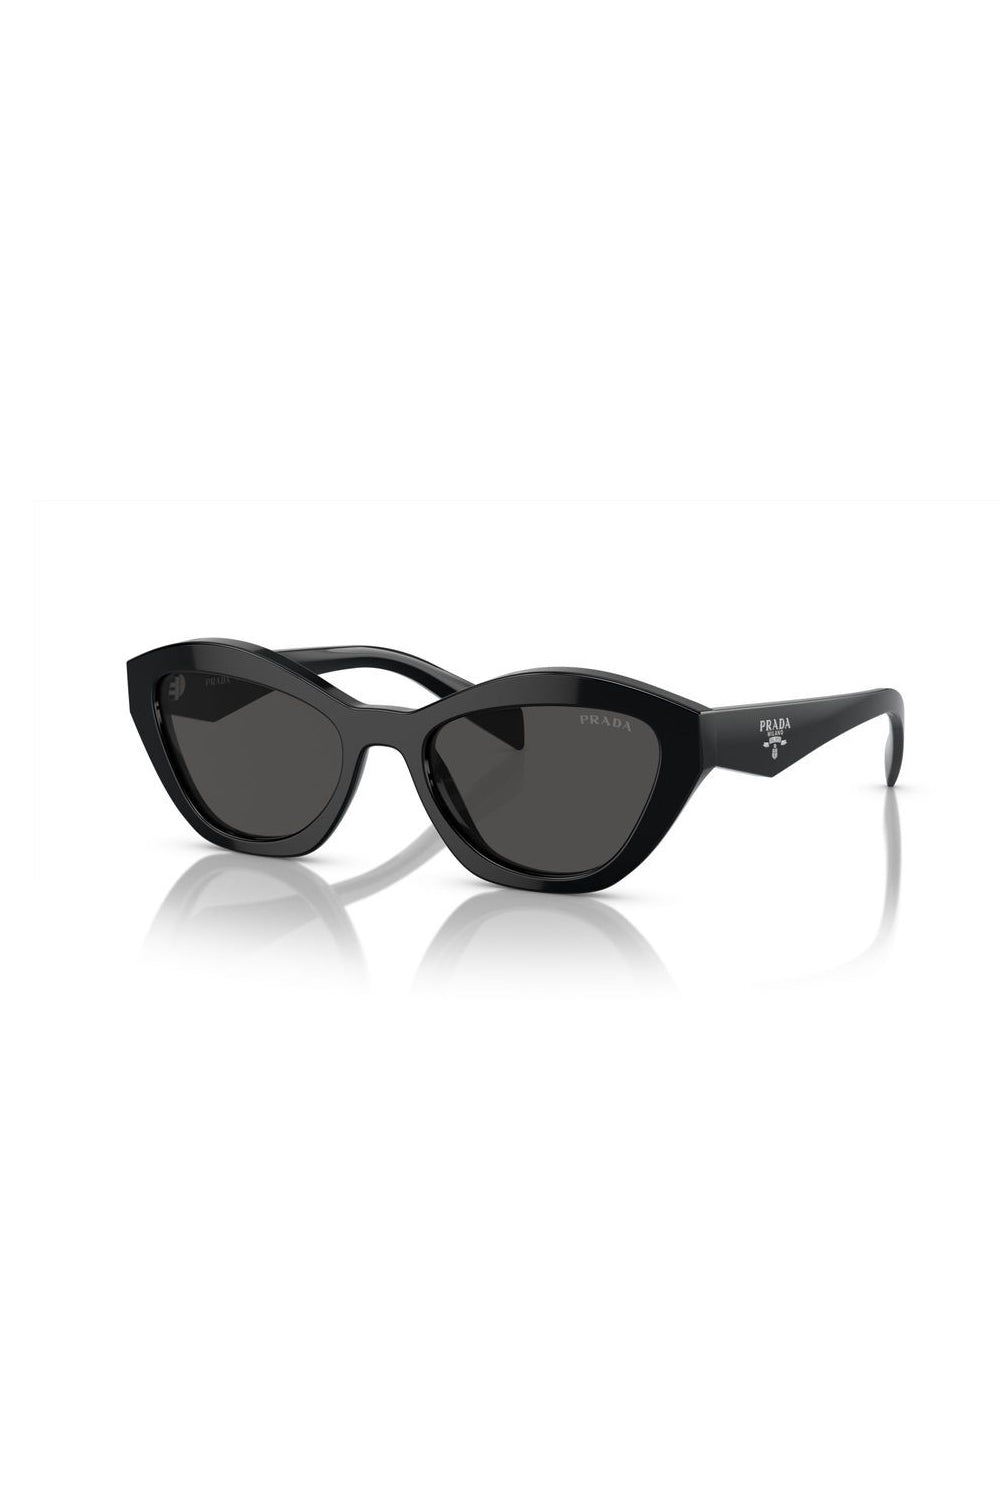 Prada Logo Round Sunglasses Black 0PR A02S